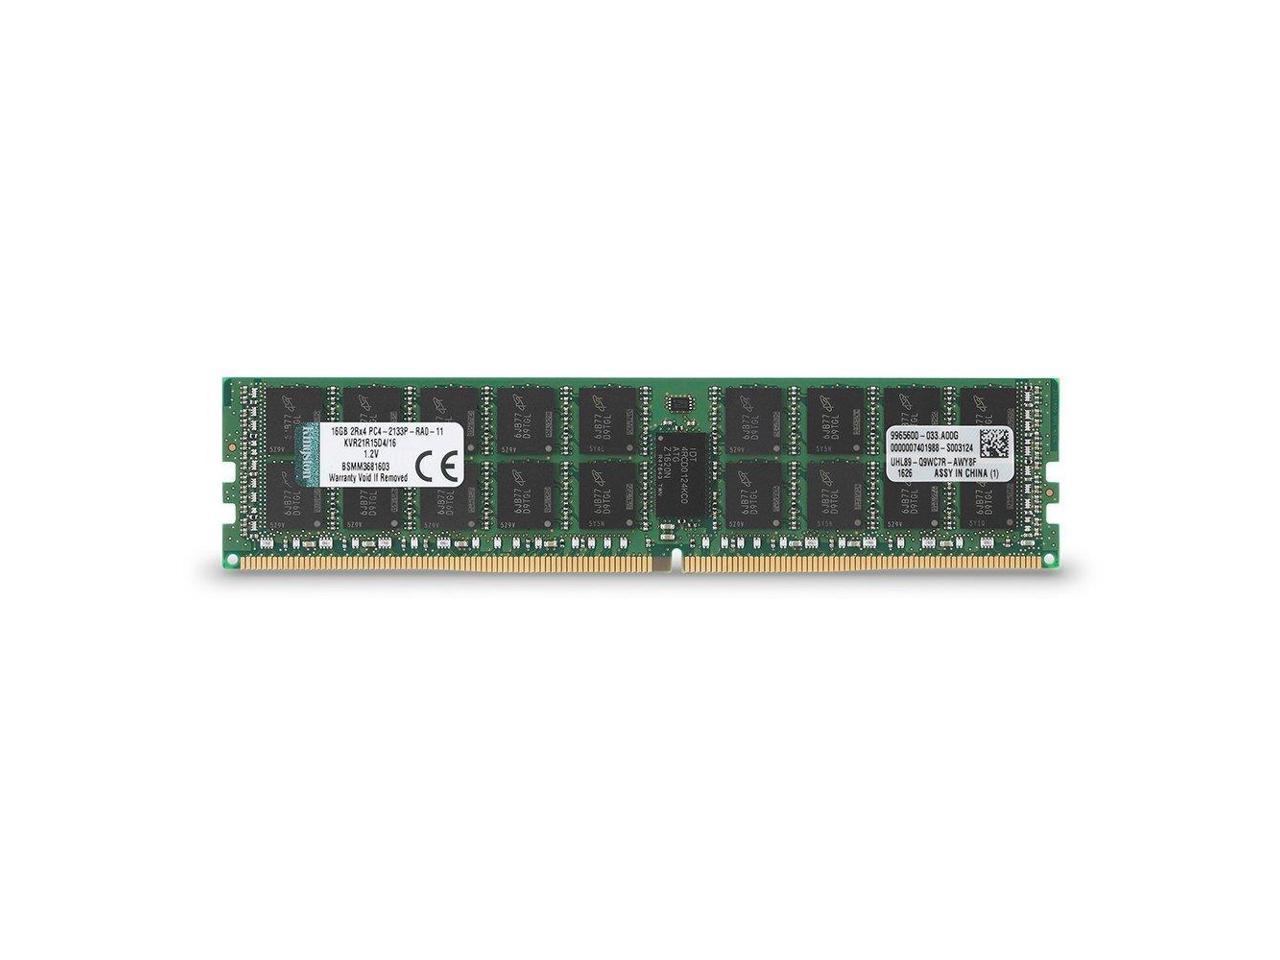 Kingston 8GB DDR4 SDRAM ECC Registered DDR4 2666 (PC4 21300) (Server Memory) Model KSM26RS8/8HAI